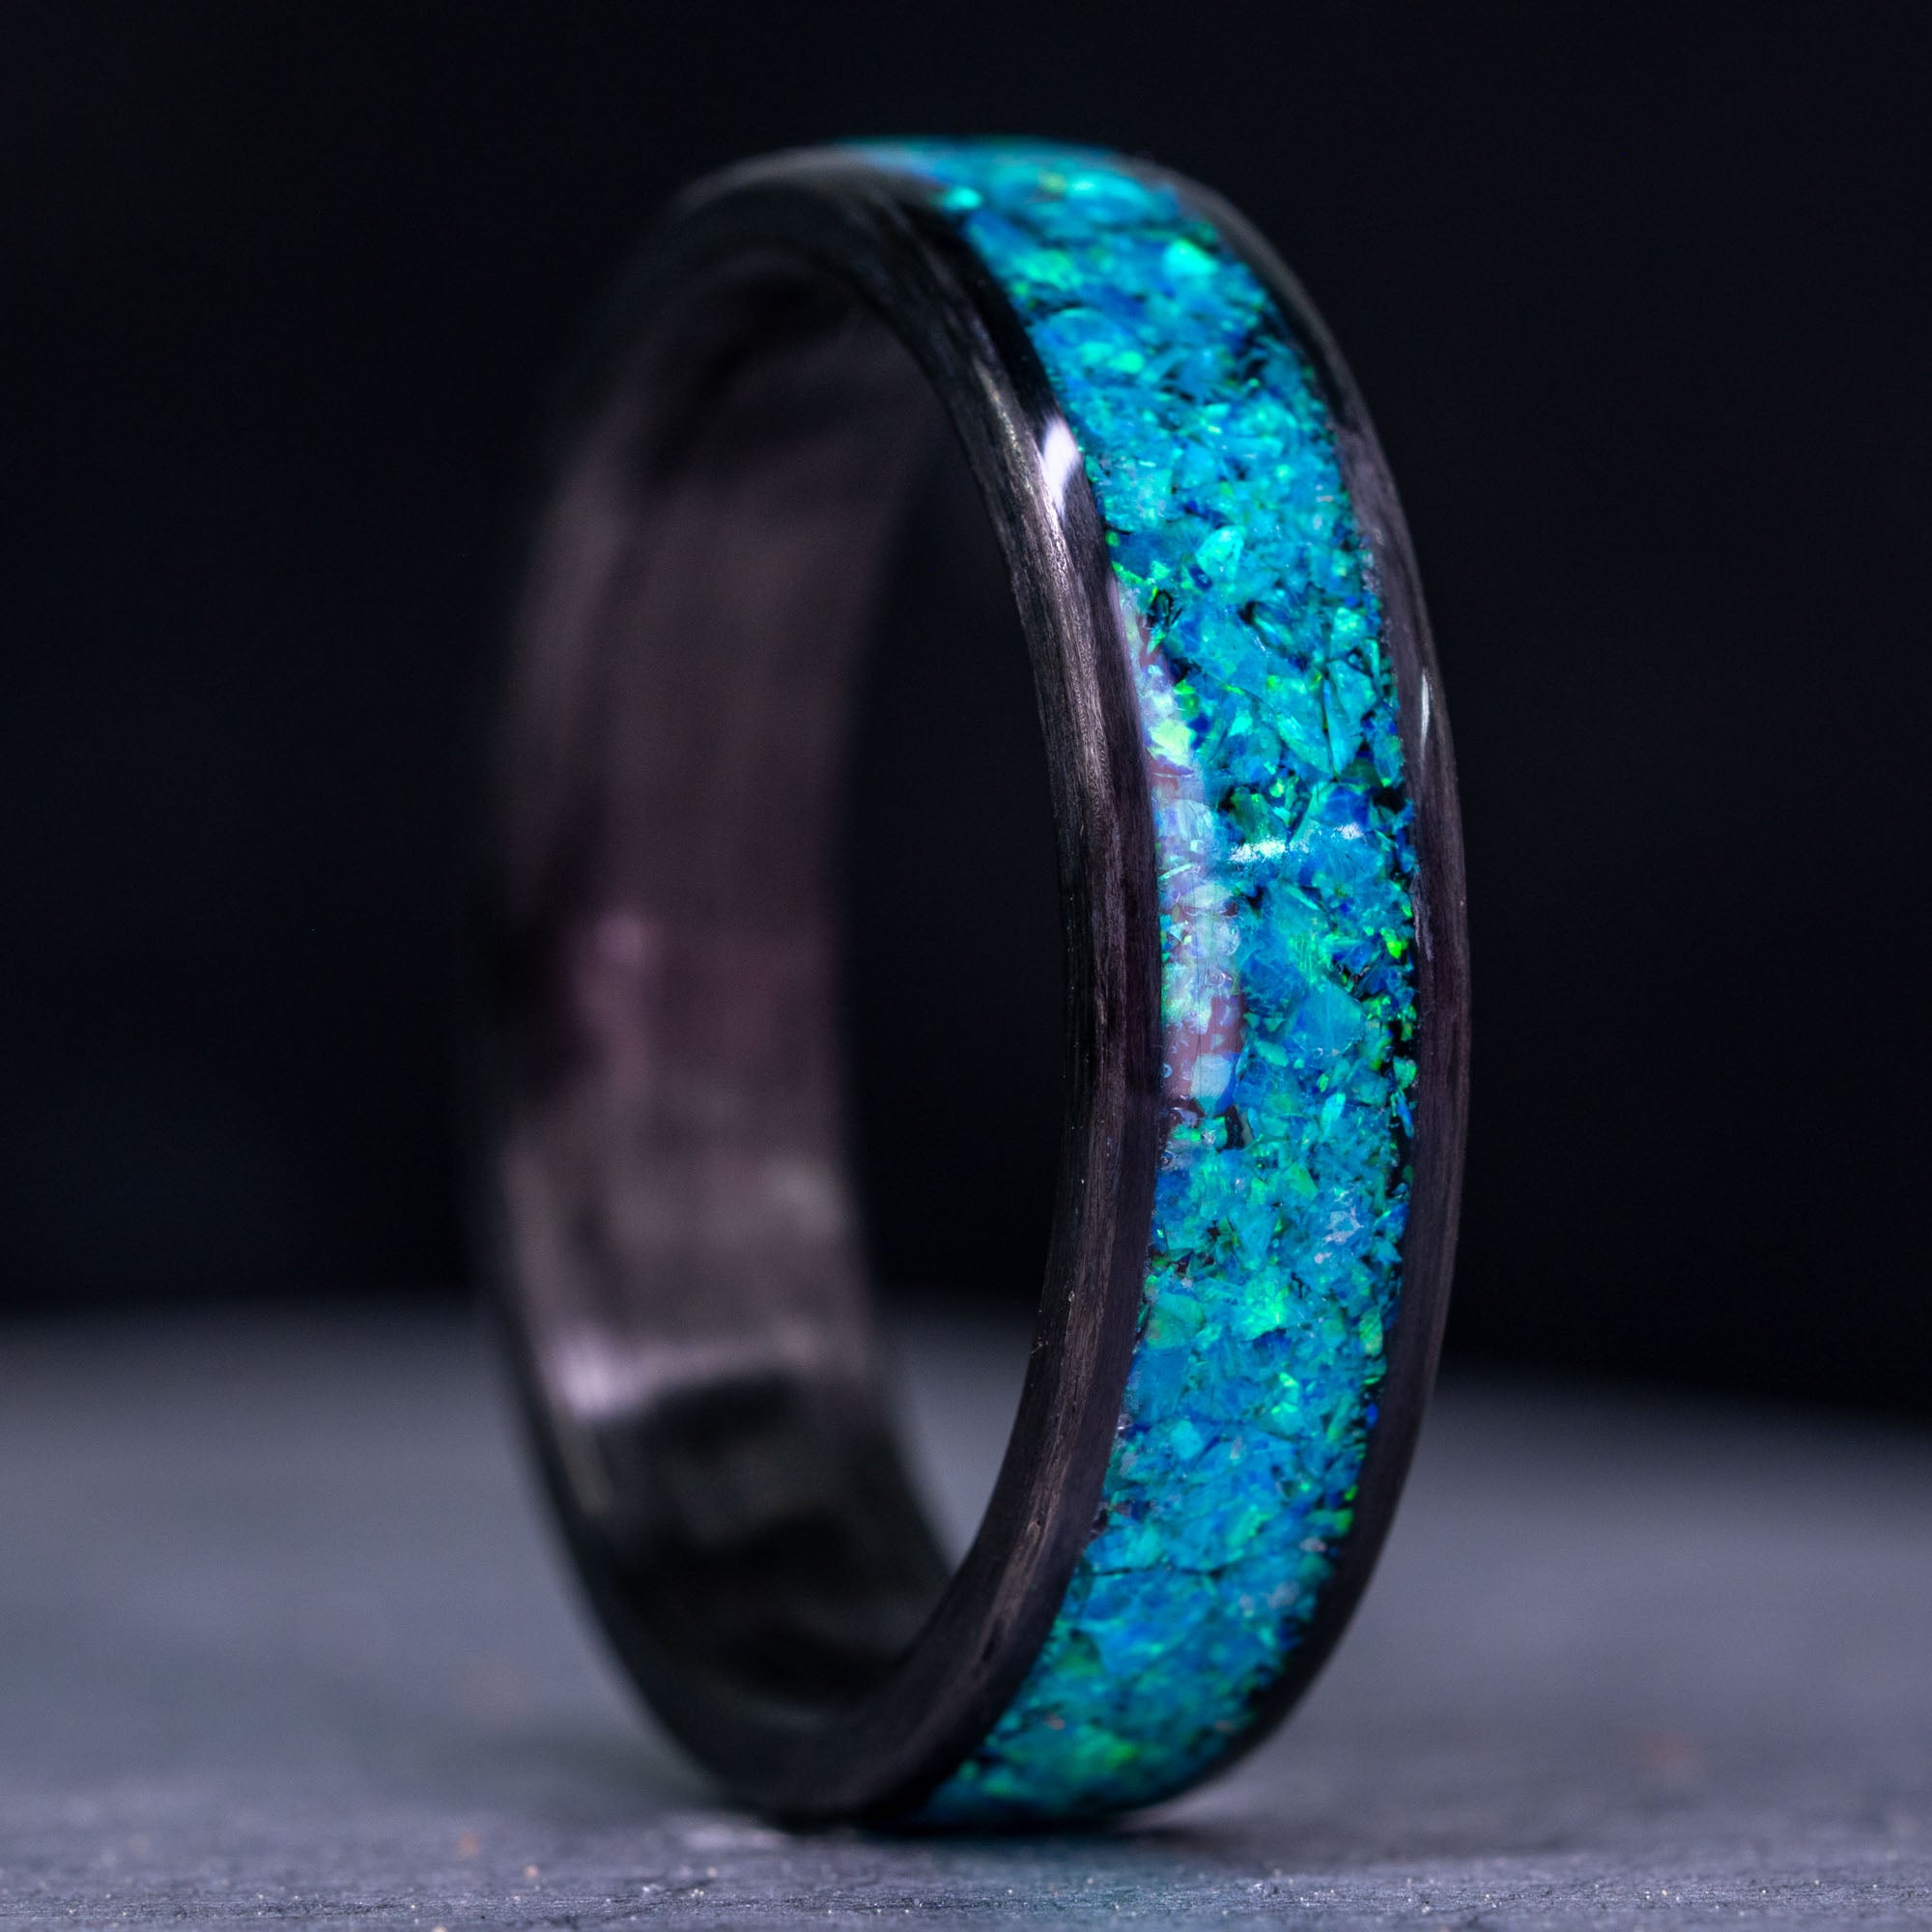 Carbon Fiber and Aqua Marine Blue Opal Inlay Ring